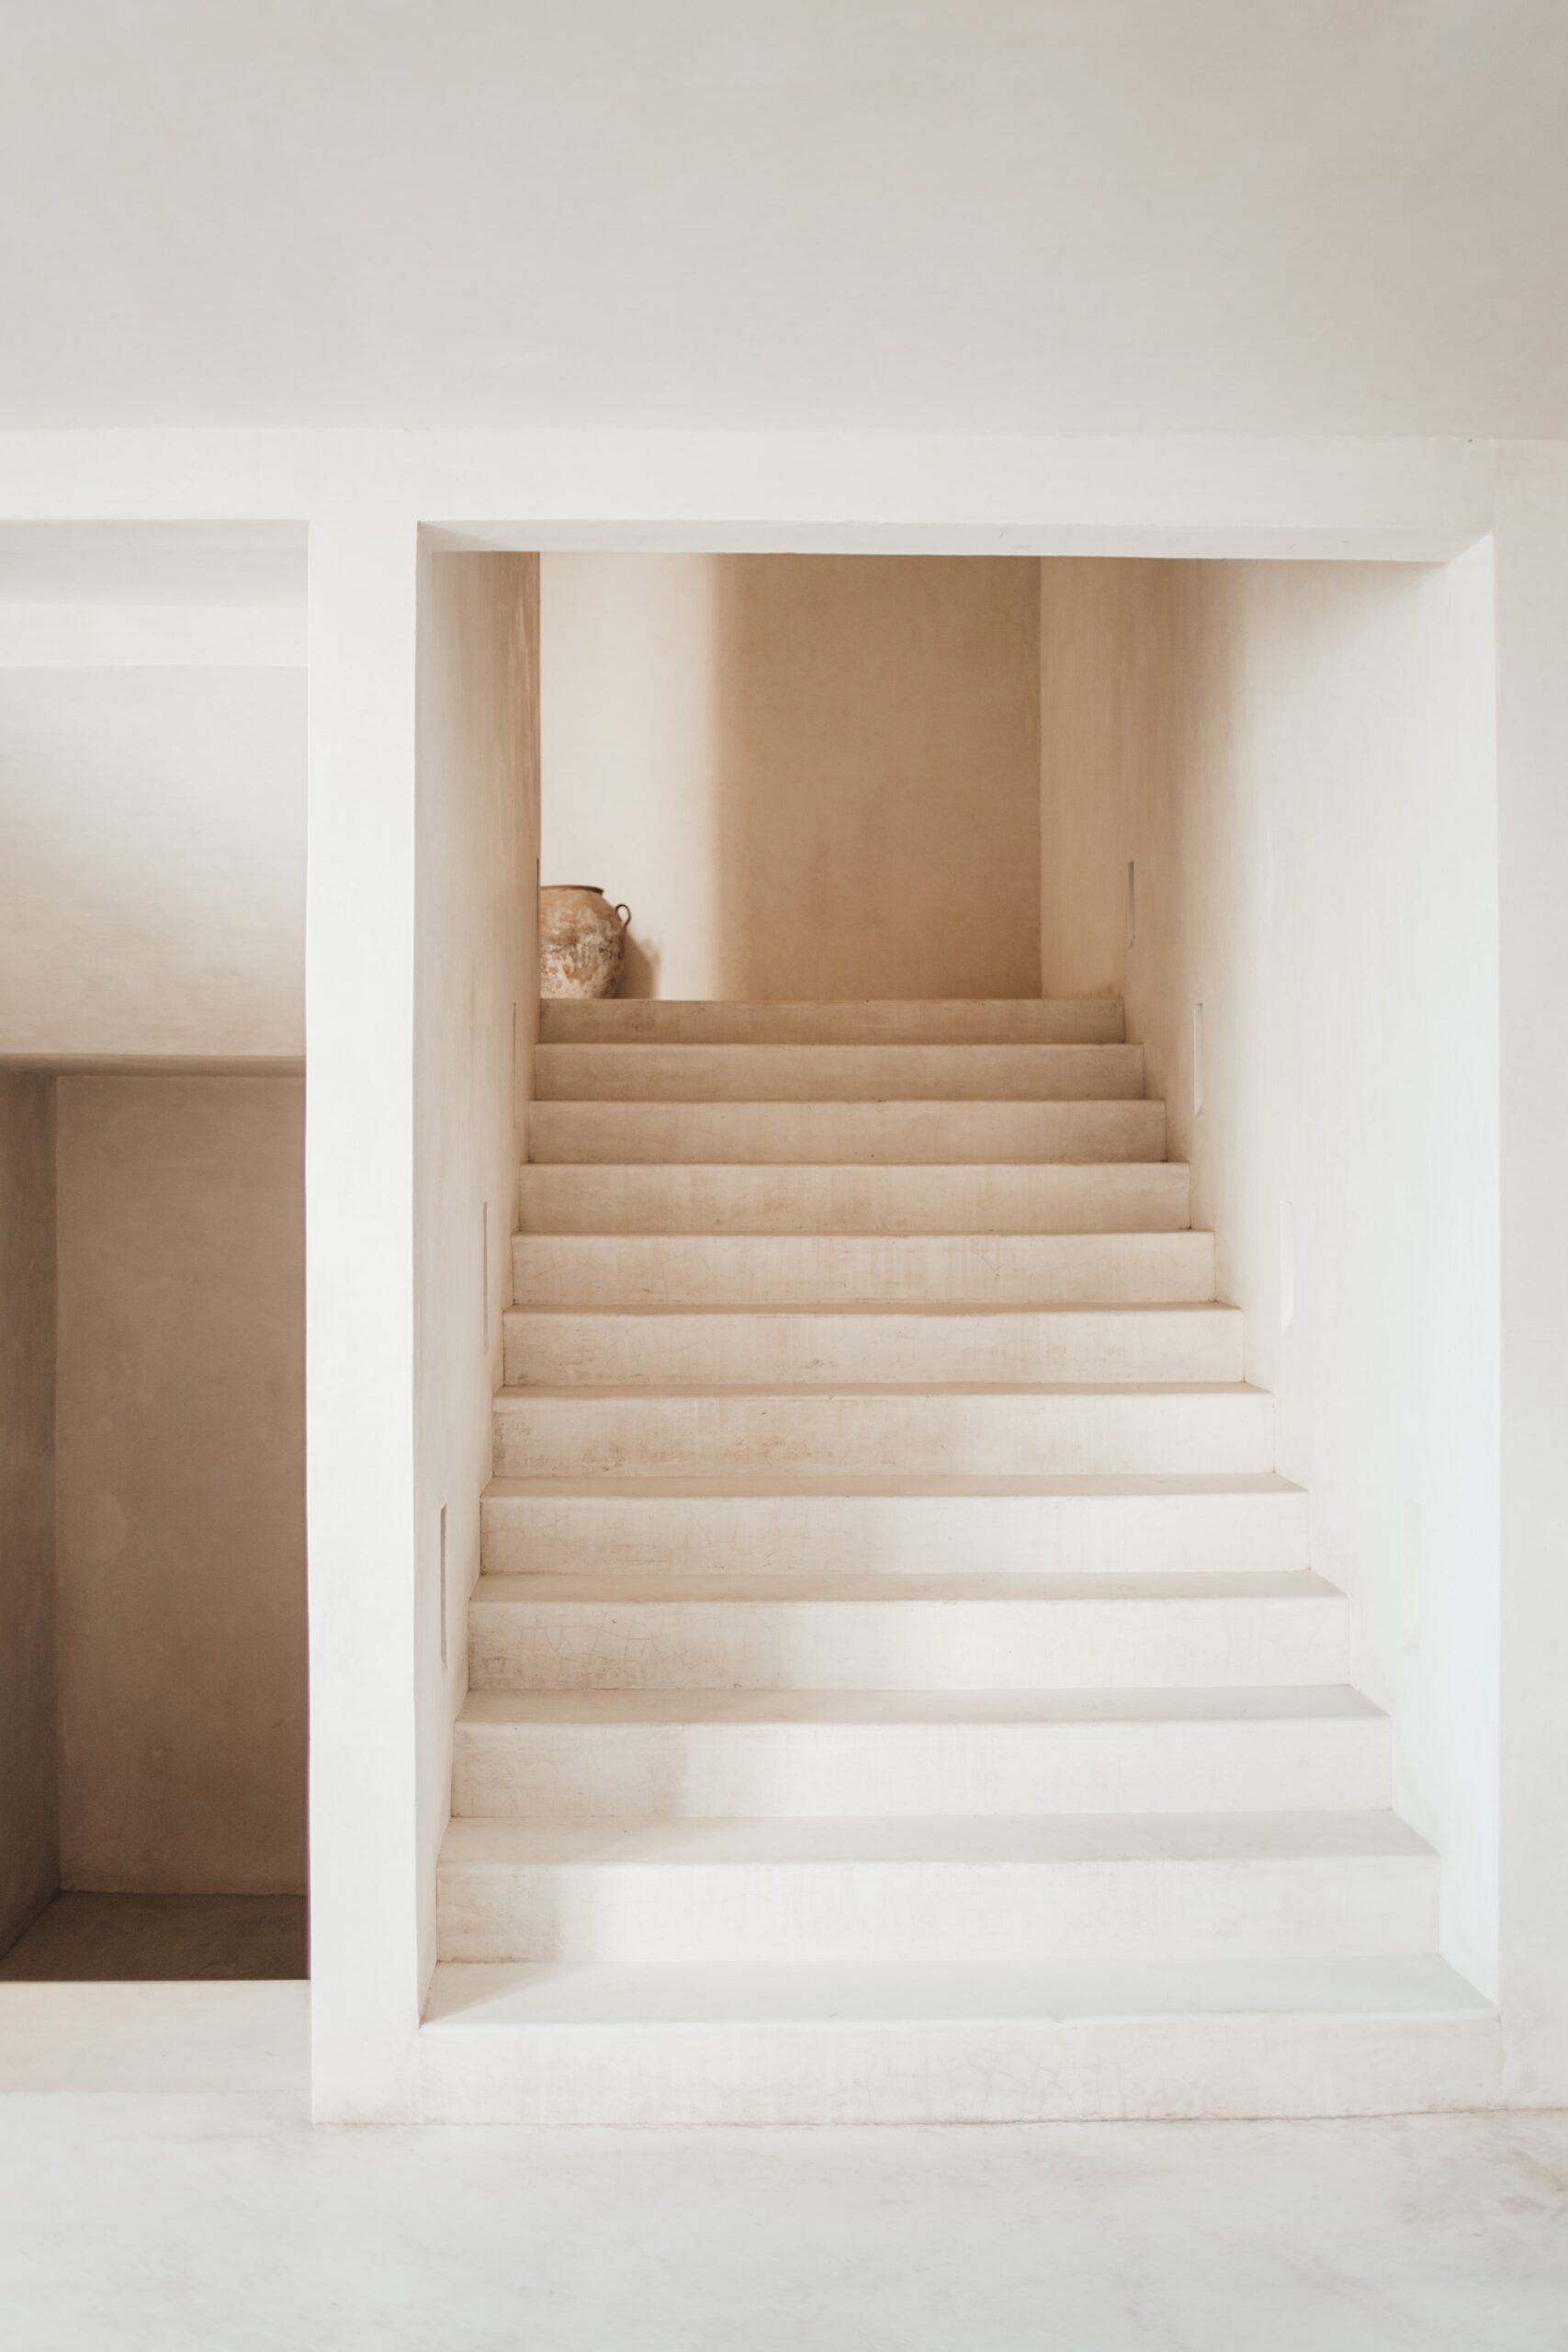 Los complementos minimalistas perfectos para tu casa.